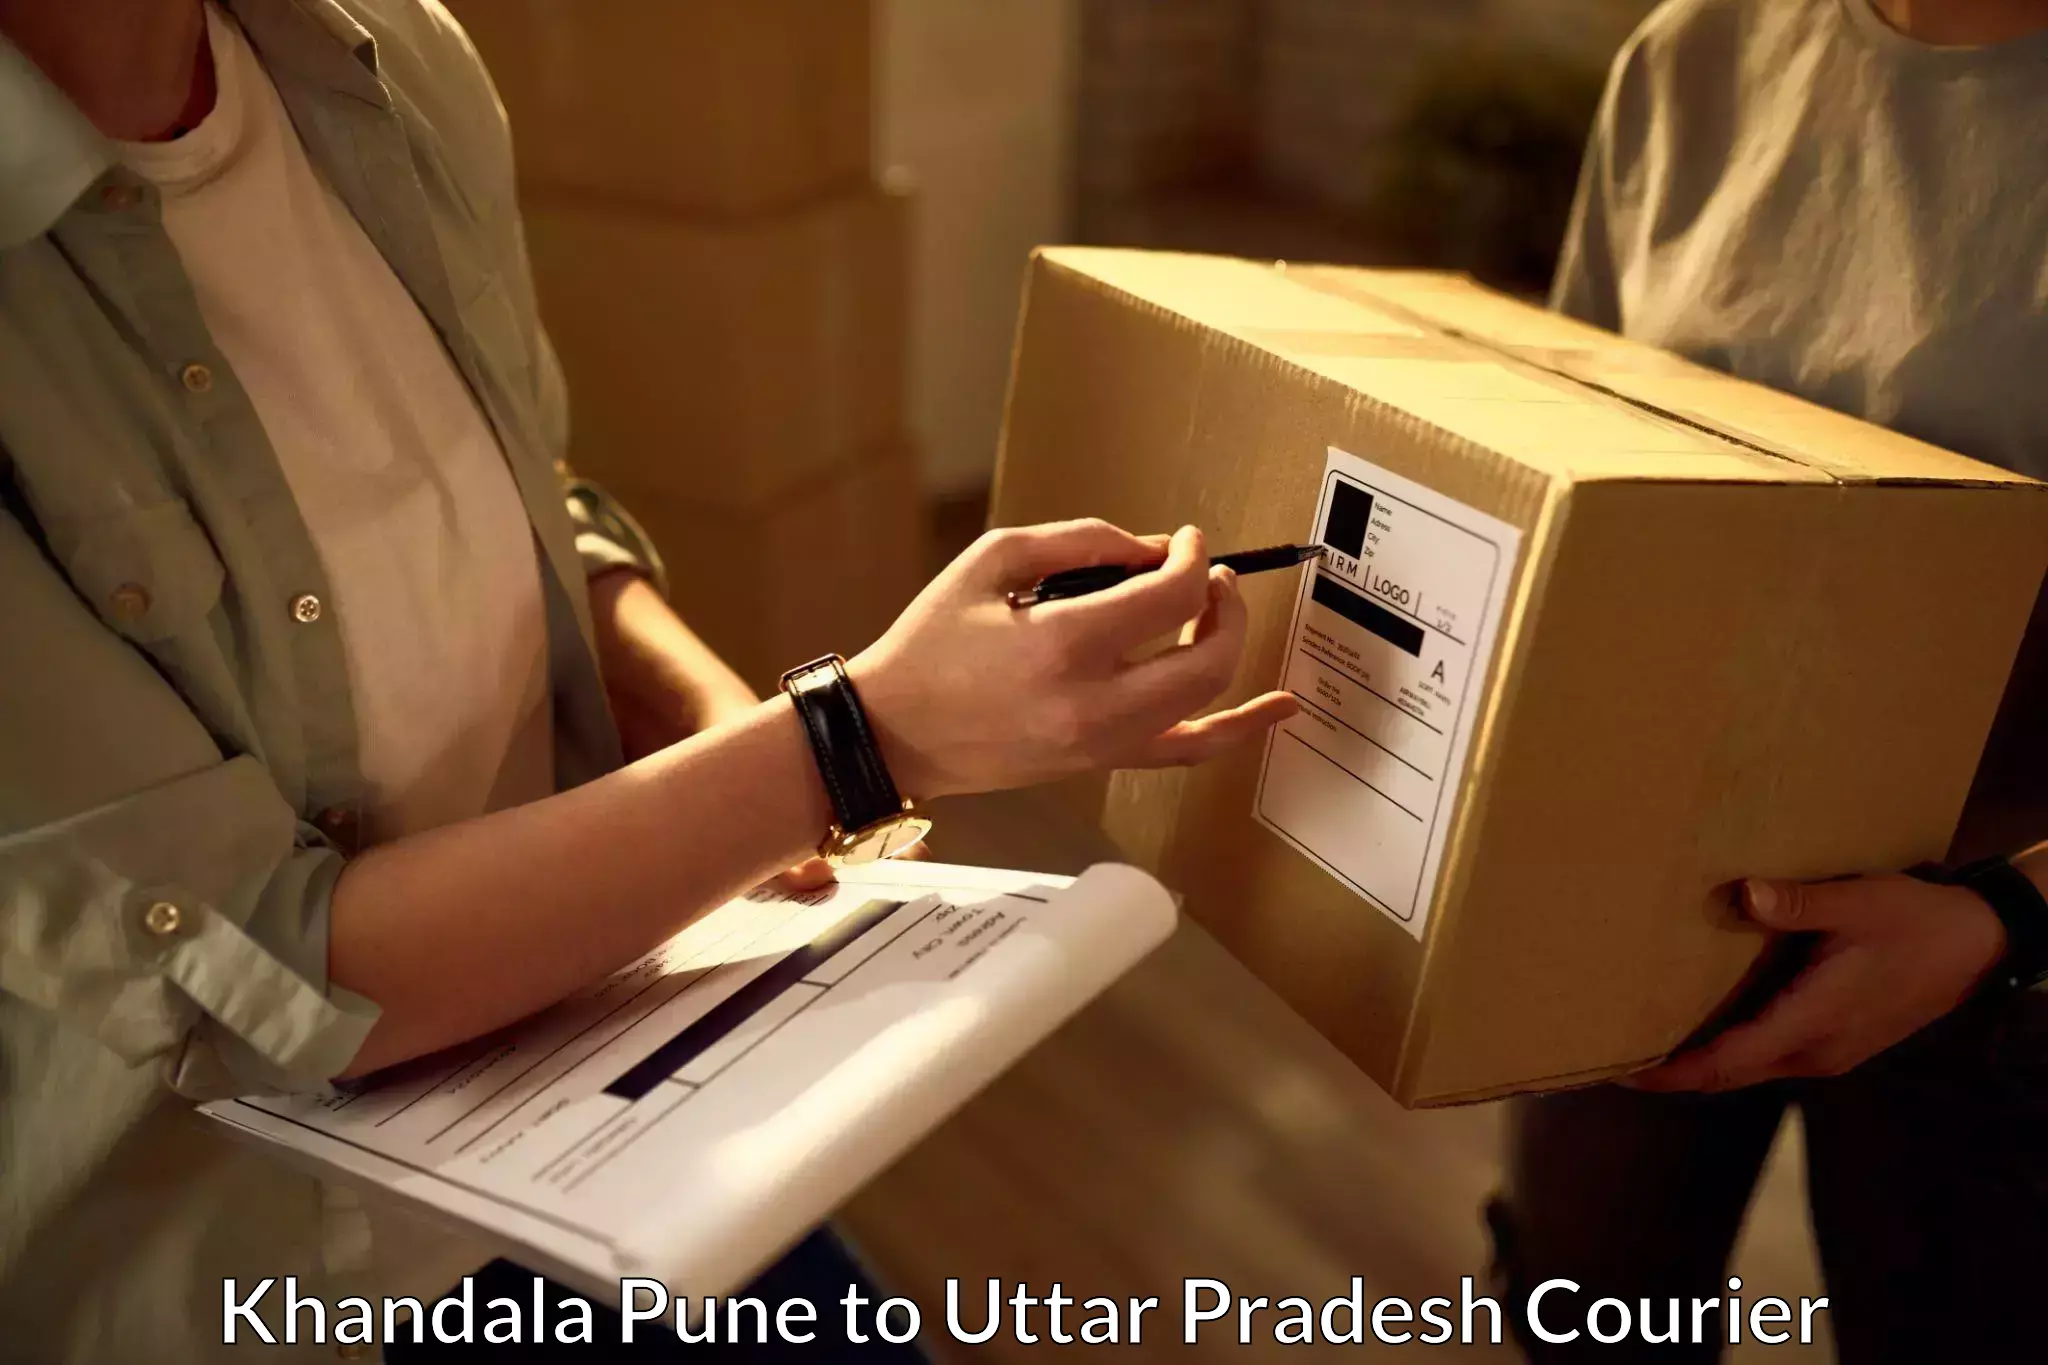 Expedited shipping methods Khandala Pune to Budhana